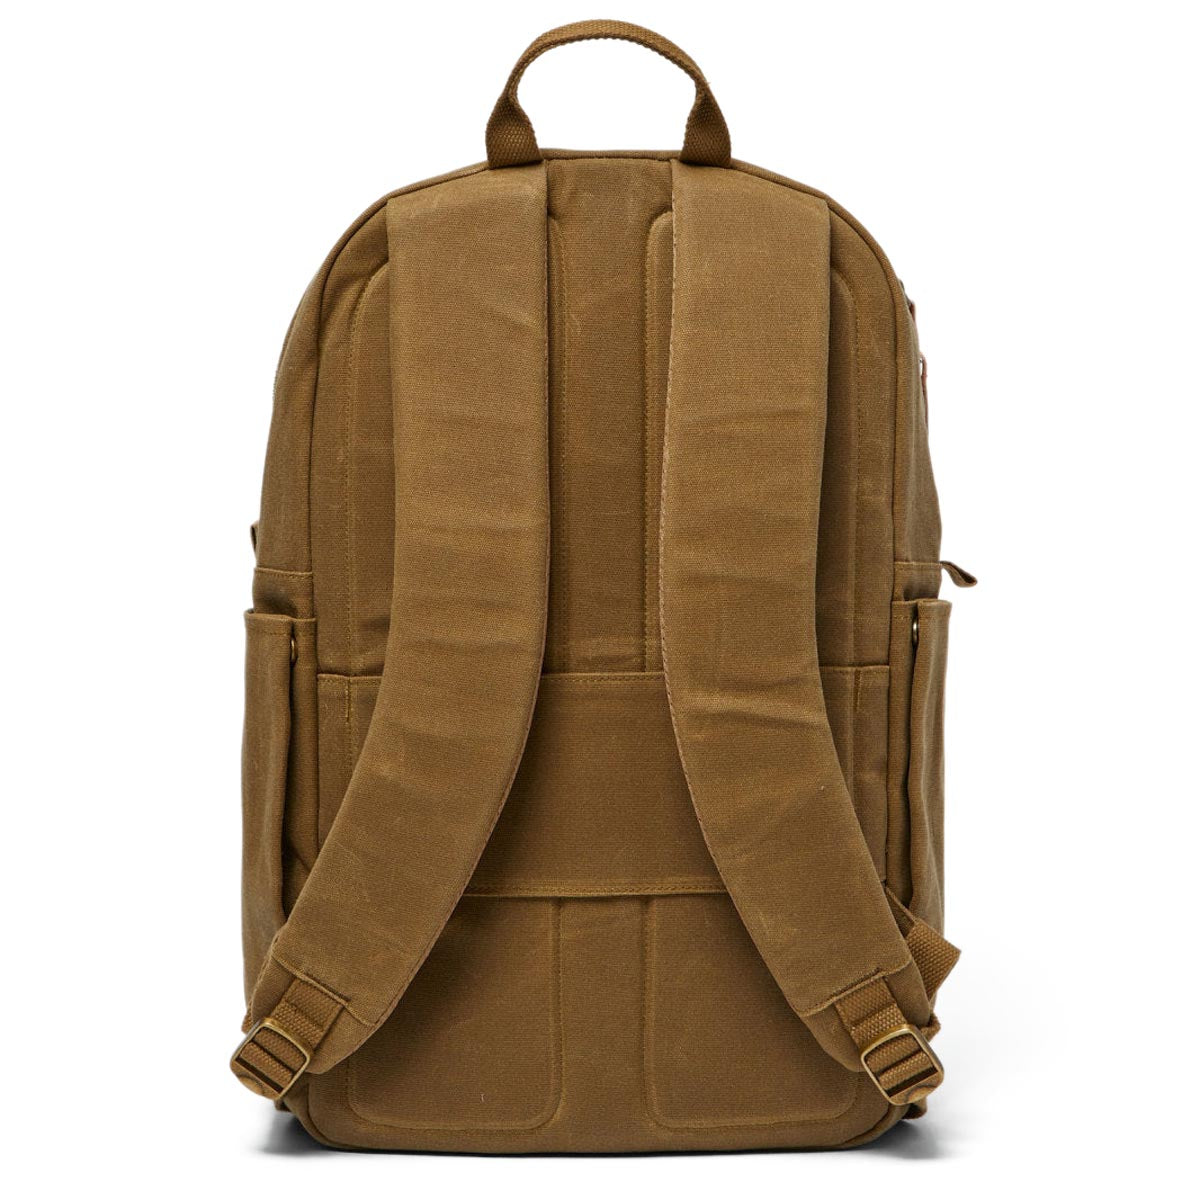 Brixton Traveler Backpack - Olive Brown image 2